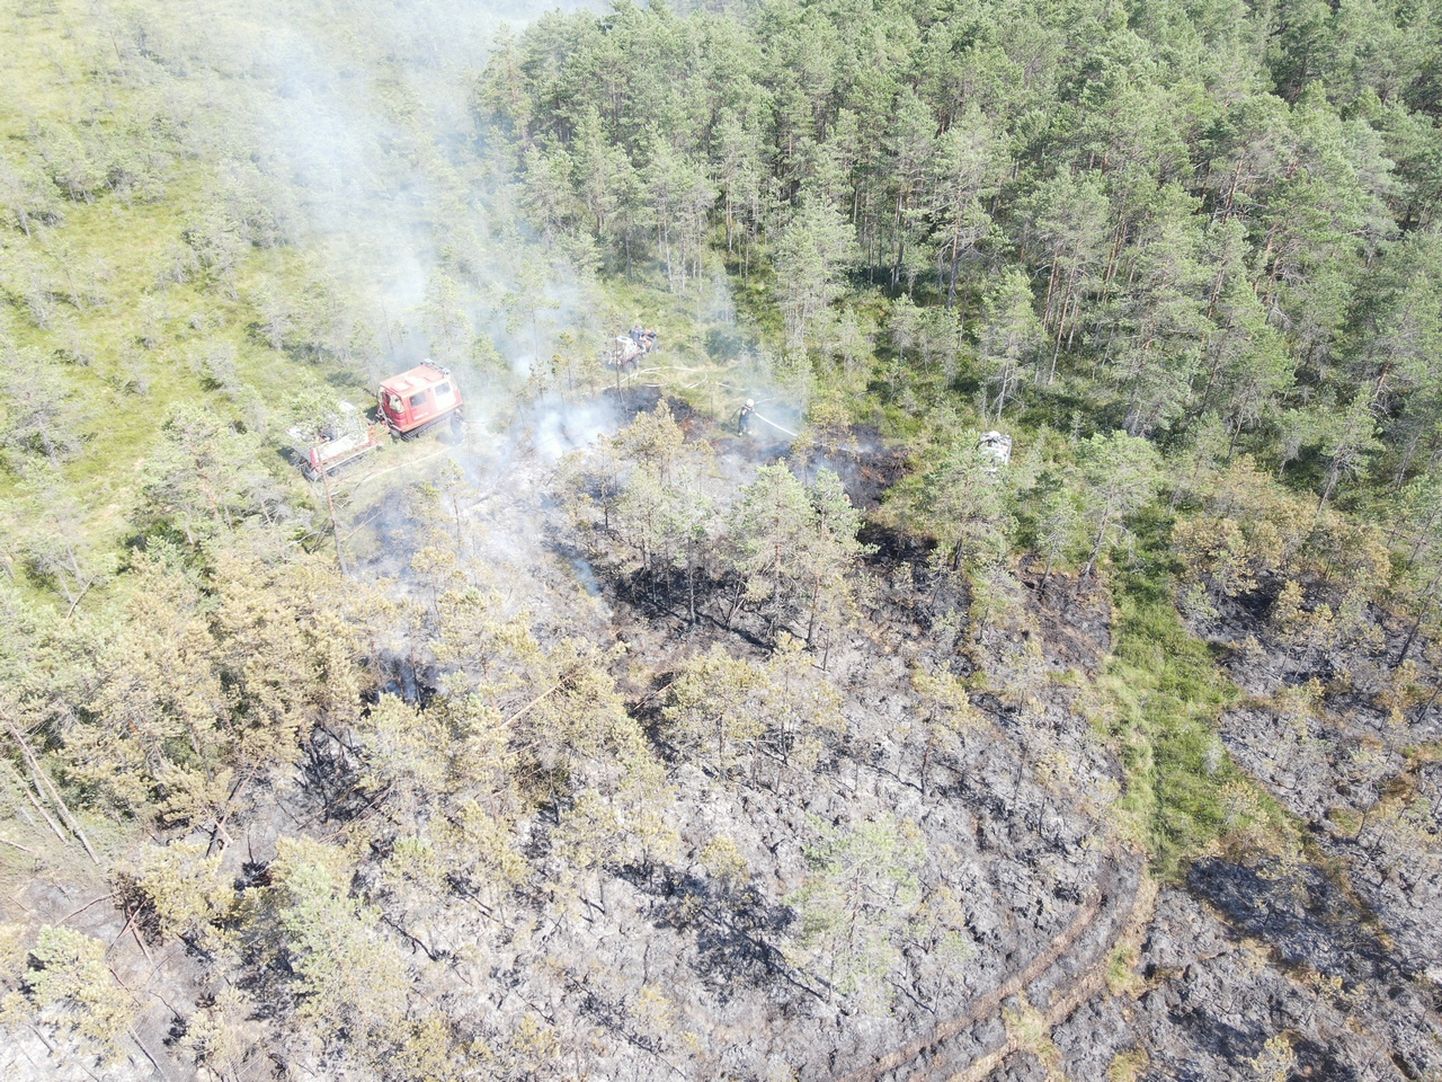 Pühapäeval sai Lõuna-Eesti päästekeskus teate metsatulekahjust Elva vallas Saare külas ning tulekahju kustutamistööd kestatavad tänaseni.